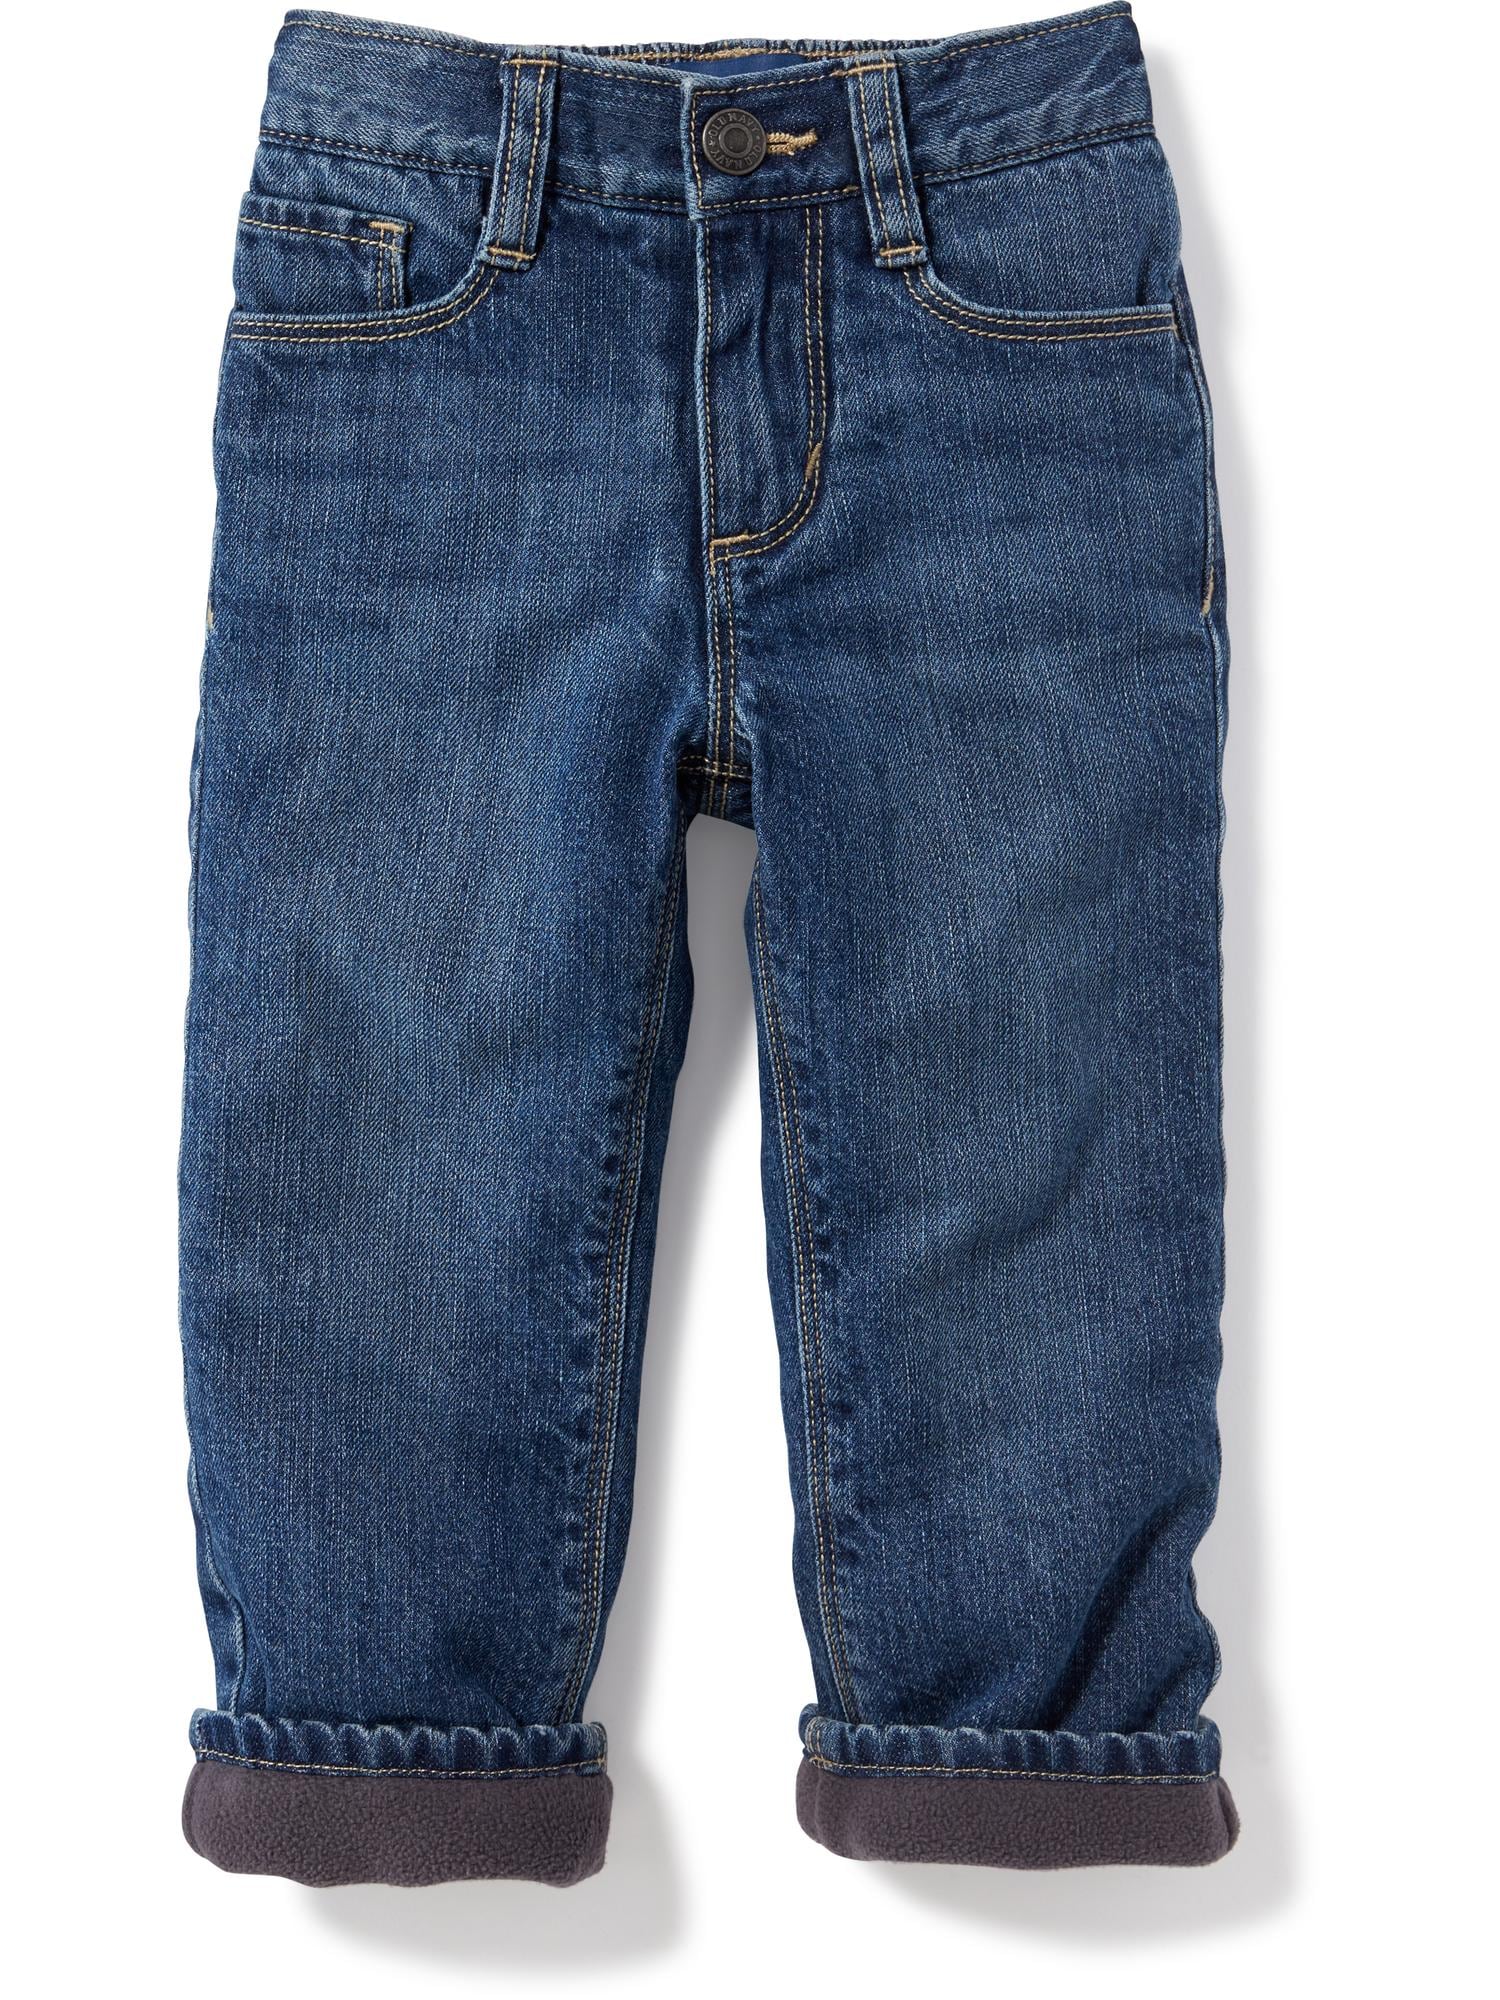 Healthtex Fleece Lined Jeans